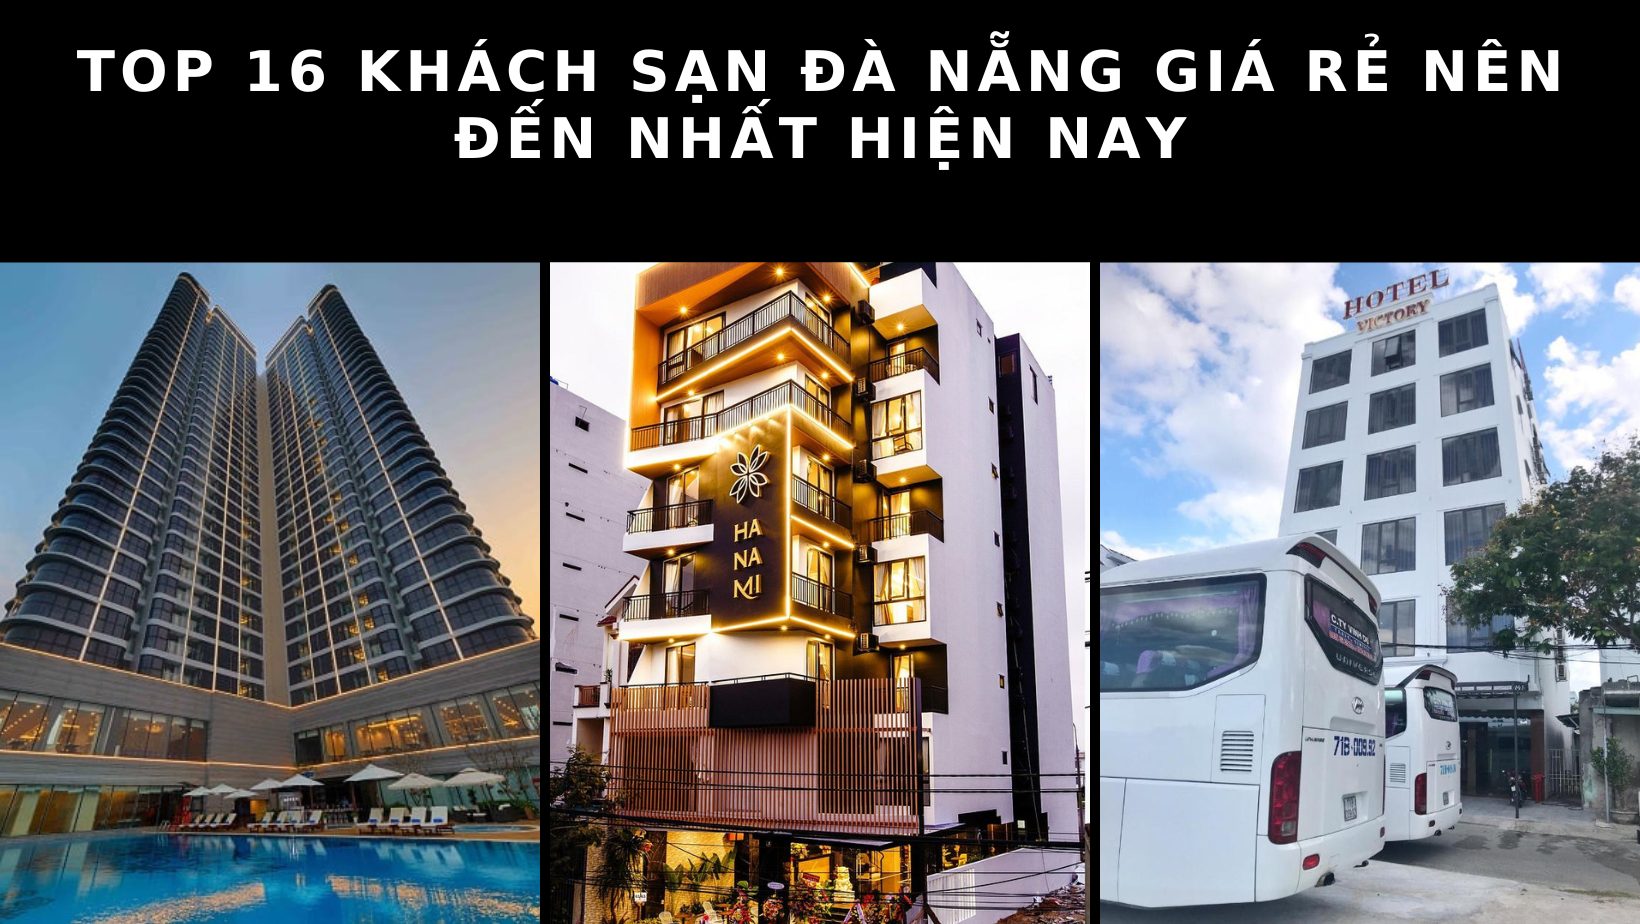 Top 13 khách sạn Đà Nẵng gần Cầu Rồng tốt nhất hiện nay